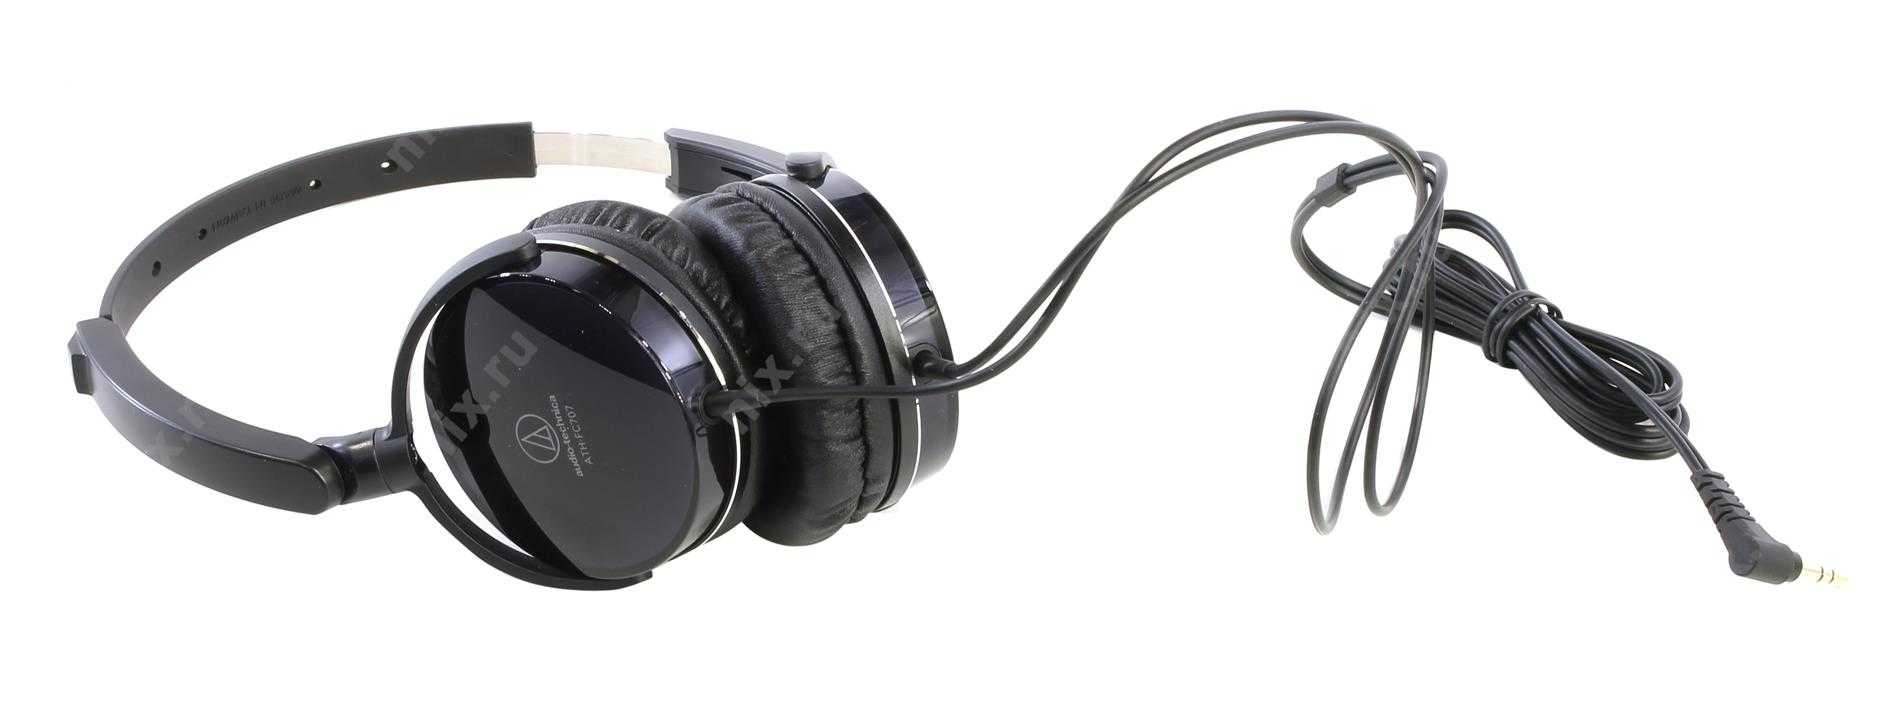 Audio-technica ath-fc707 купить по акционной цене , отзывы и обзоры.